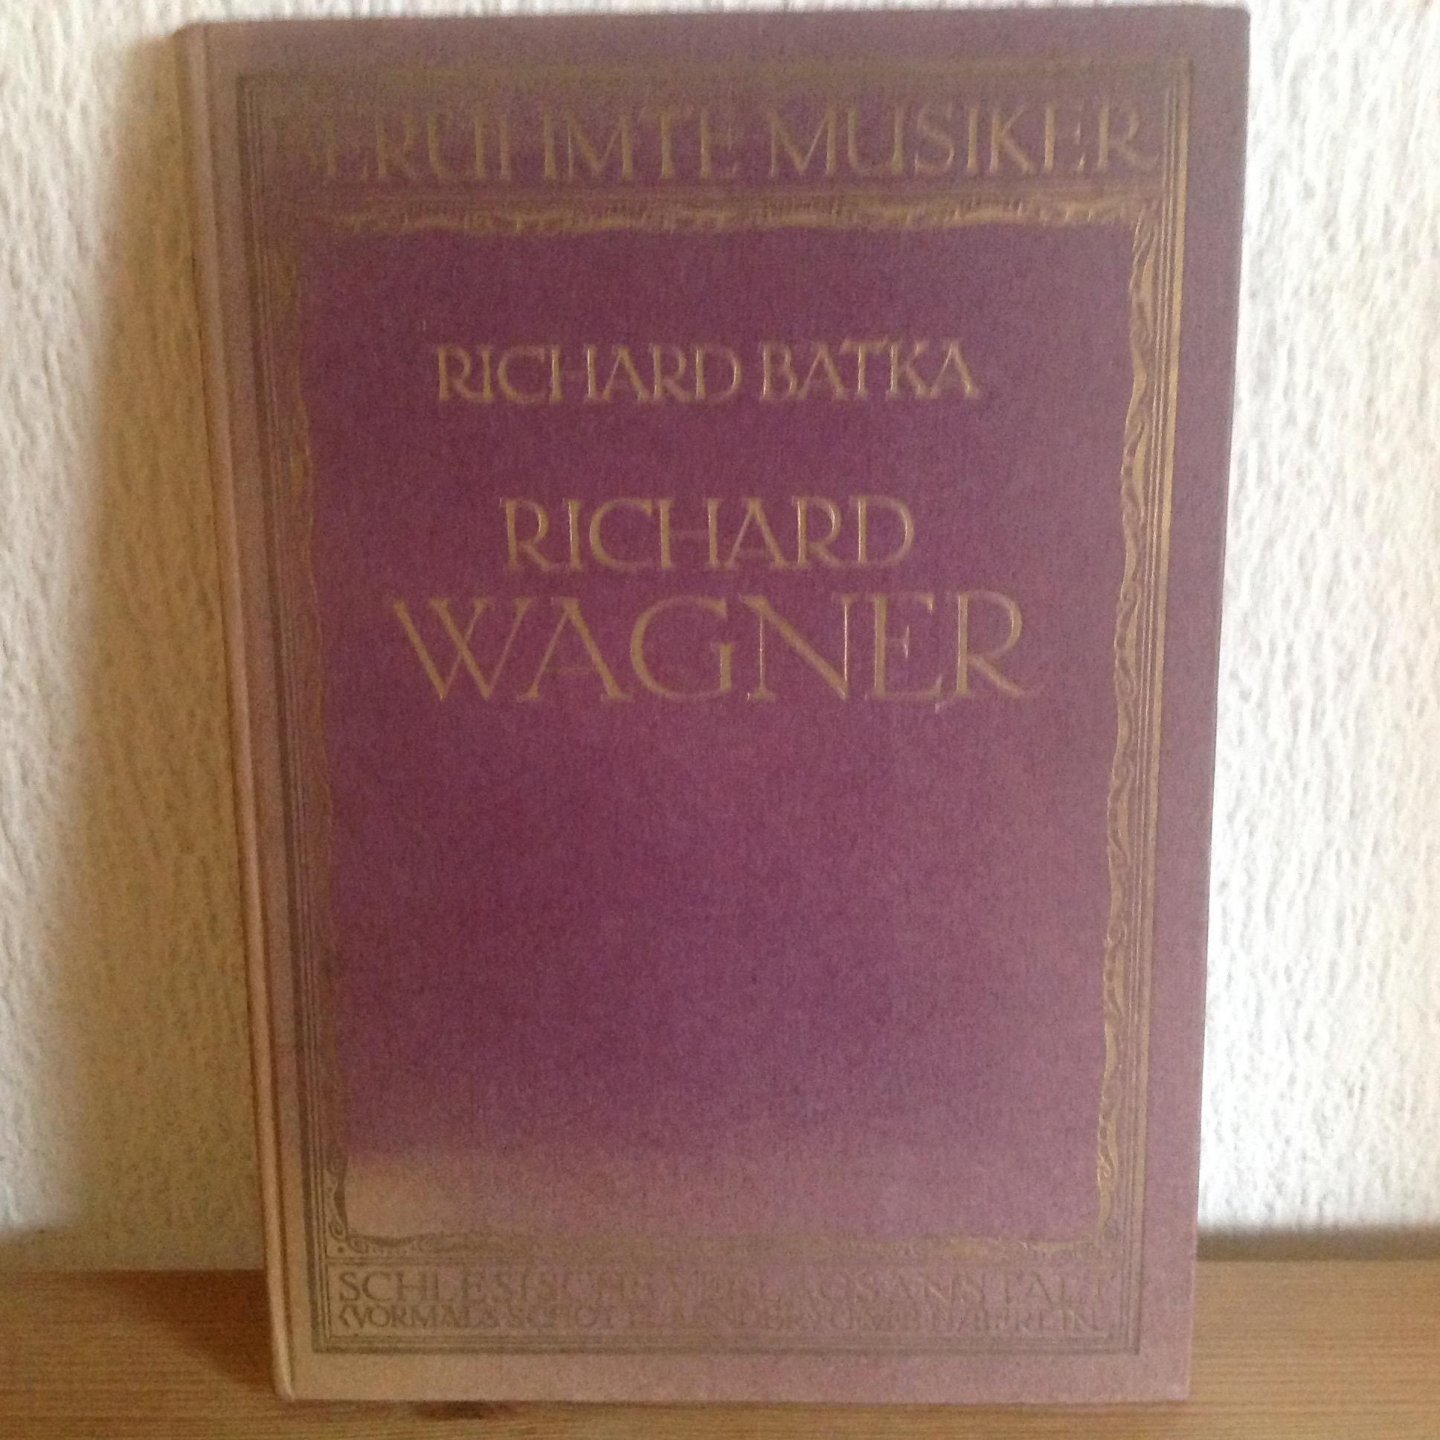 Richard Batka - Richard Wagner ,Beruhmte MusikerLebens und Characterbilder nest Einfuhrung in die Werke der Meister